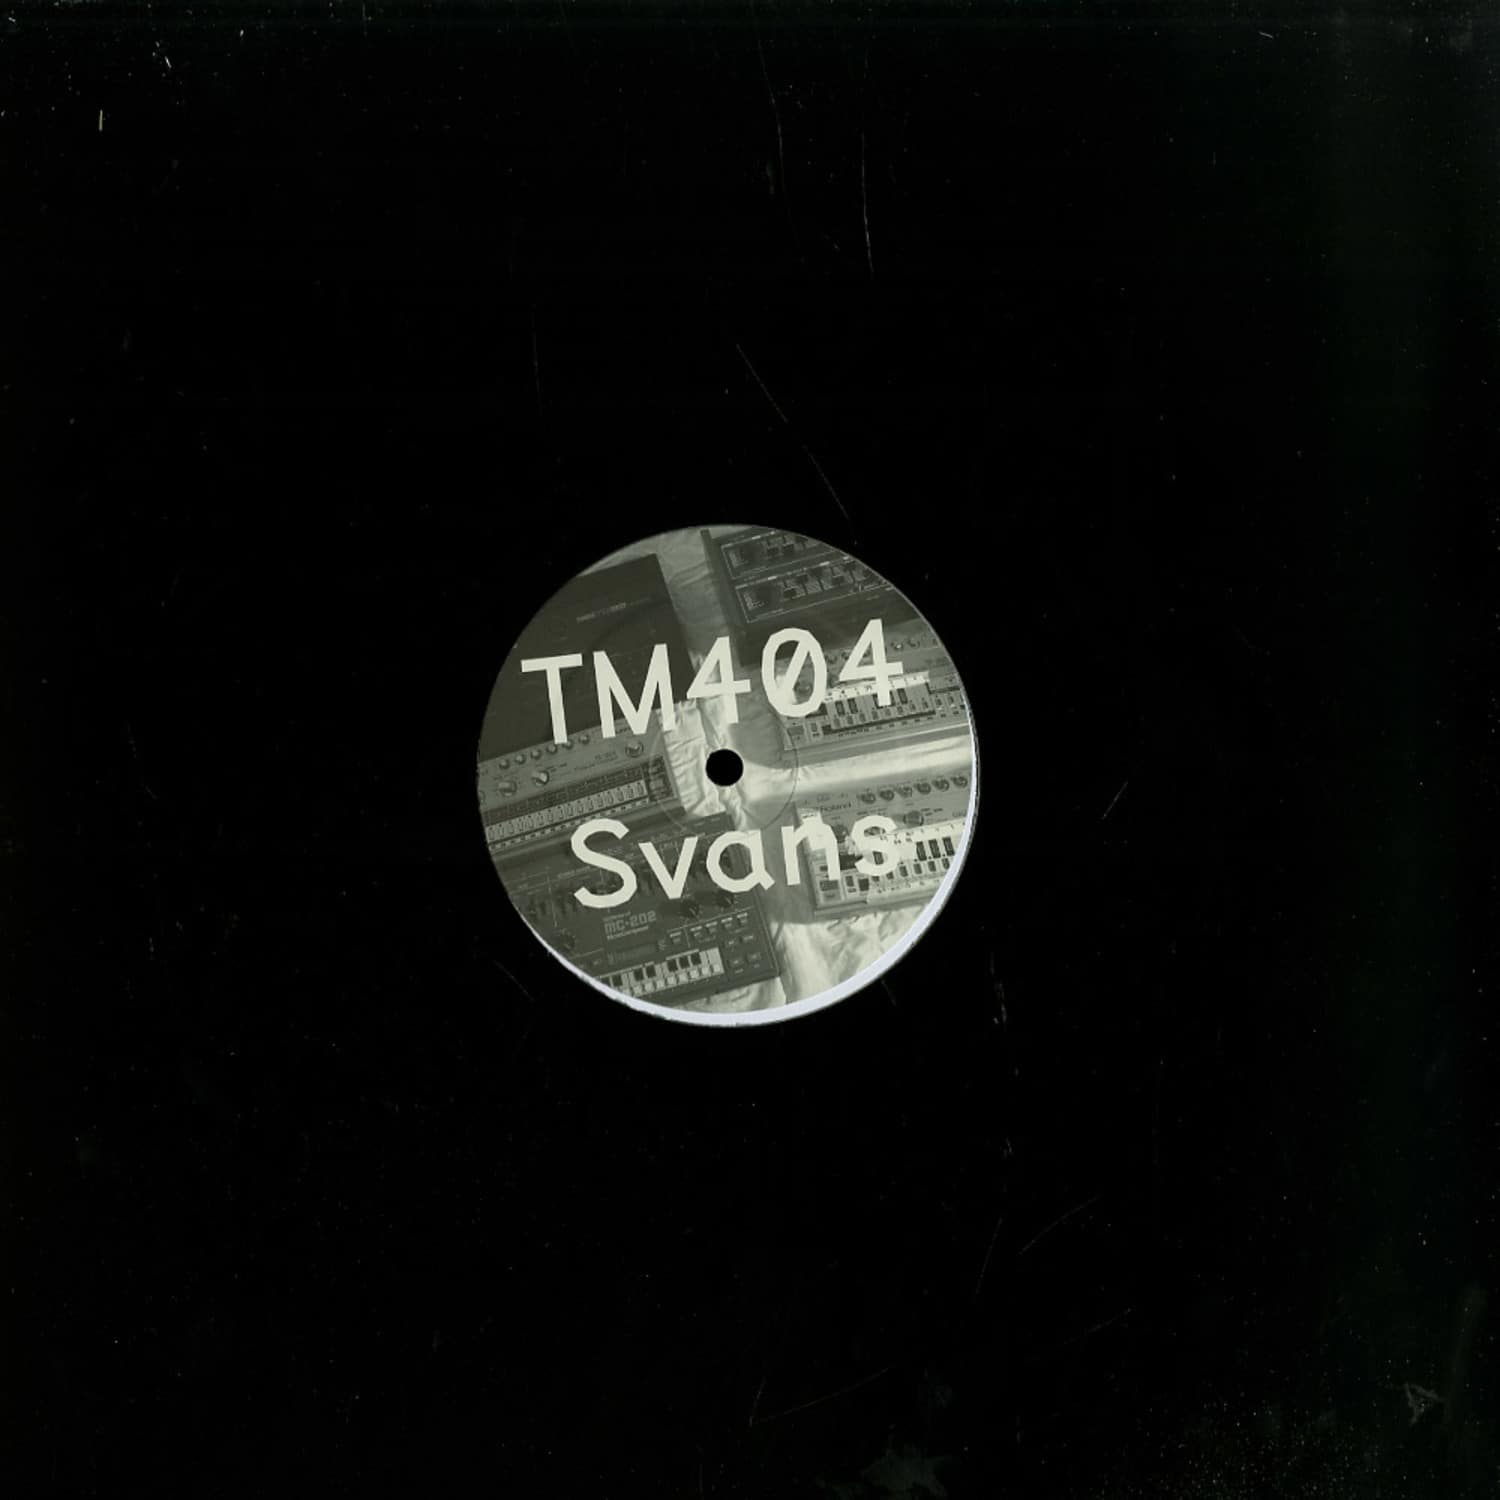 TM404 - SVANS EP